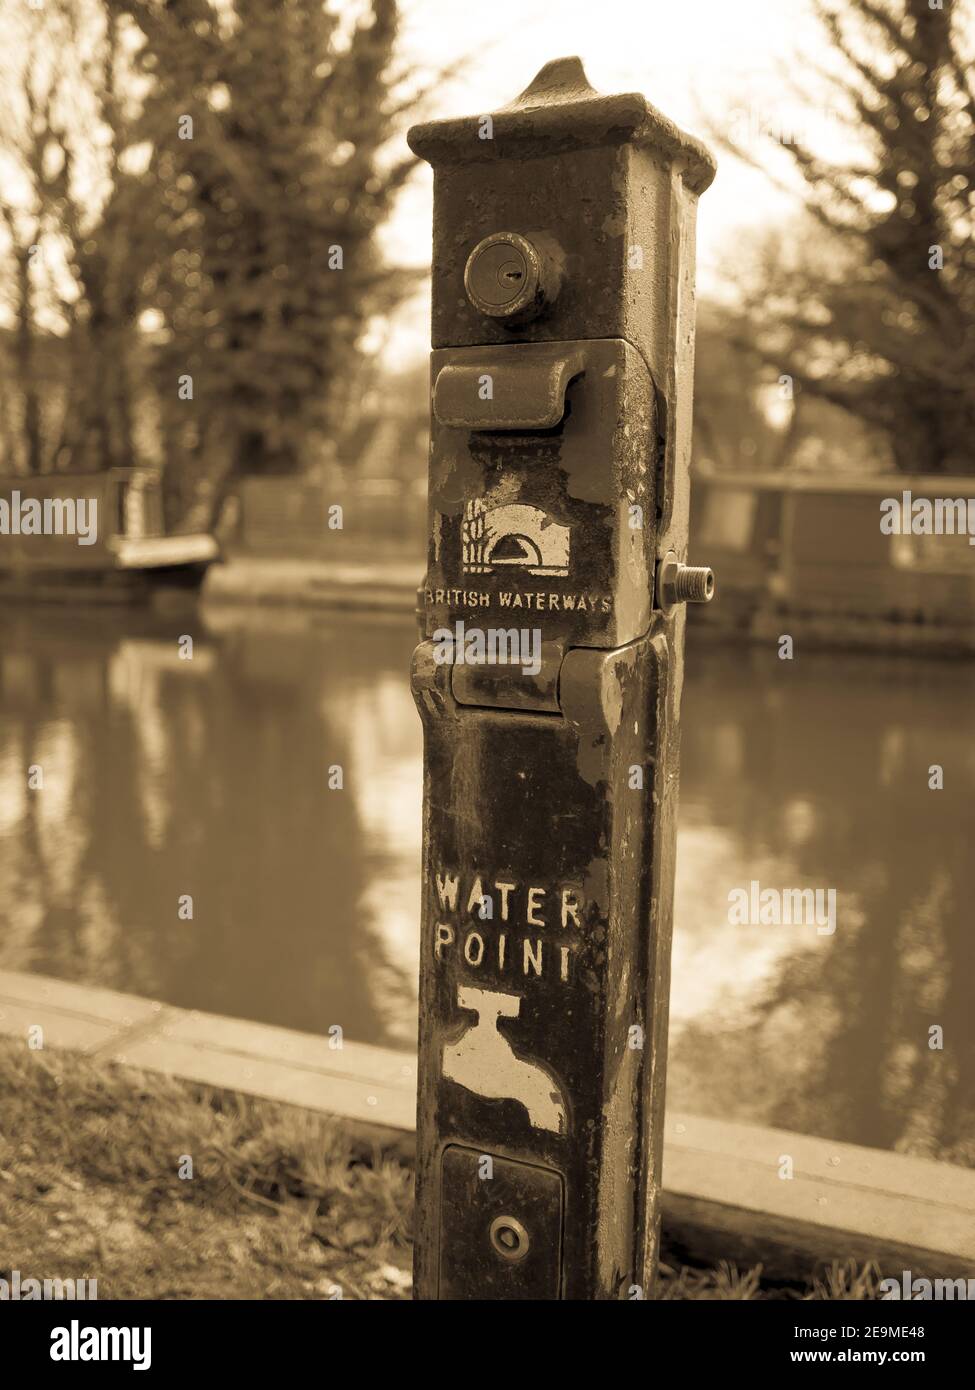 Un point d'eau British Waterways pour les canots situés sur le canal Kennet et Avon près de l'écluse de Kintbury à Berkshire, en Angleterre. Banque D'Images